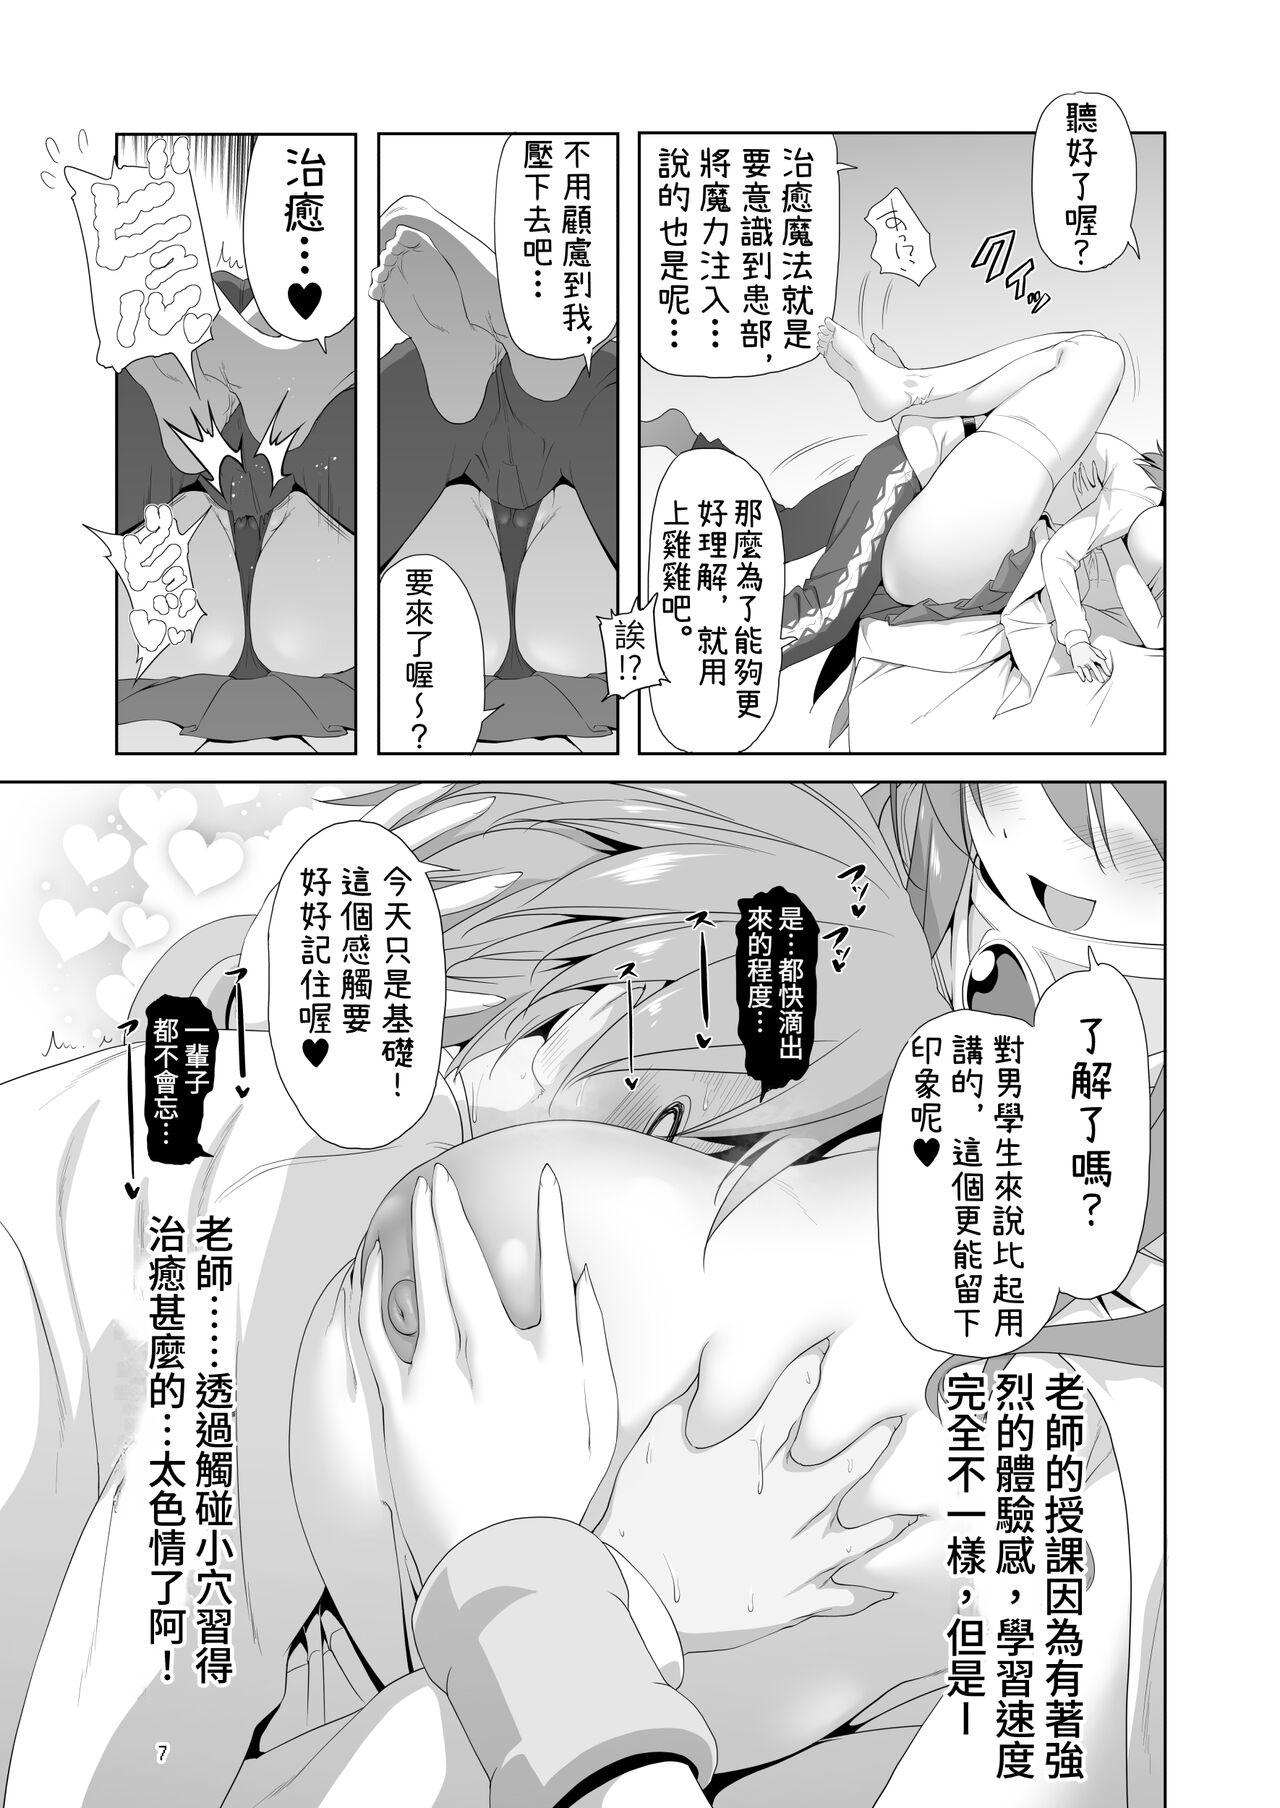 Sharing Makotoni Zannen desu ga Bouken no Sho 9 wa Kiete Shimaimashita. - Original Stretch - Page 7